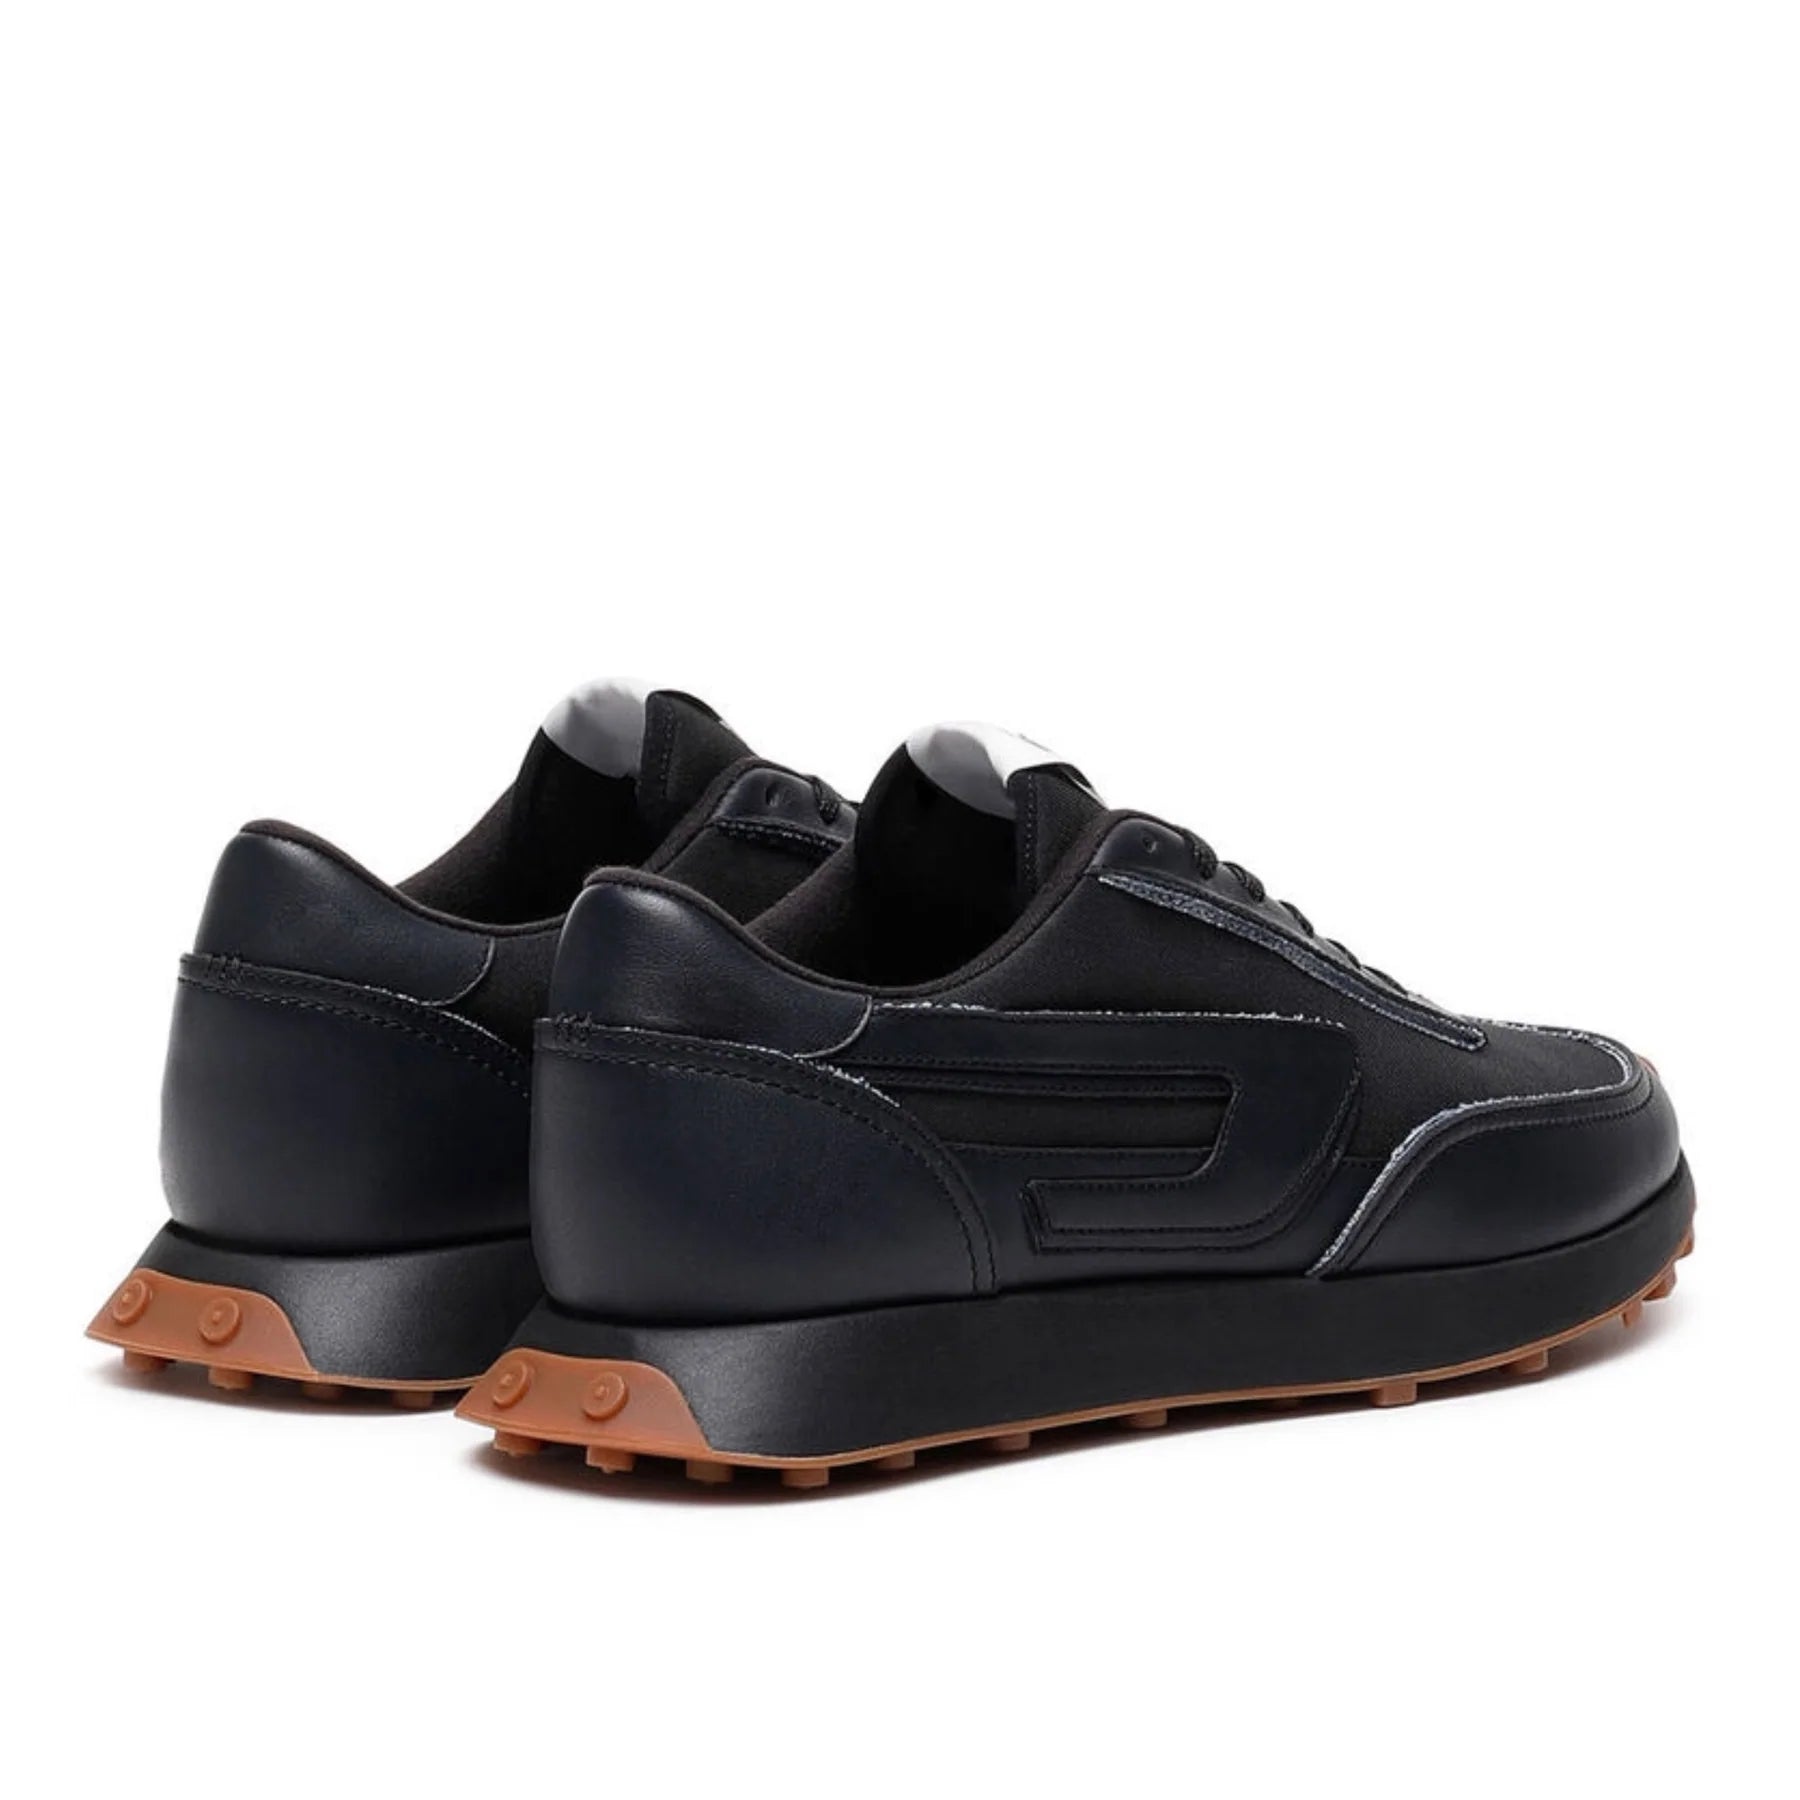 Diesel men sneakers black Y02873 P4798 T8013